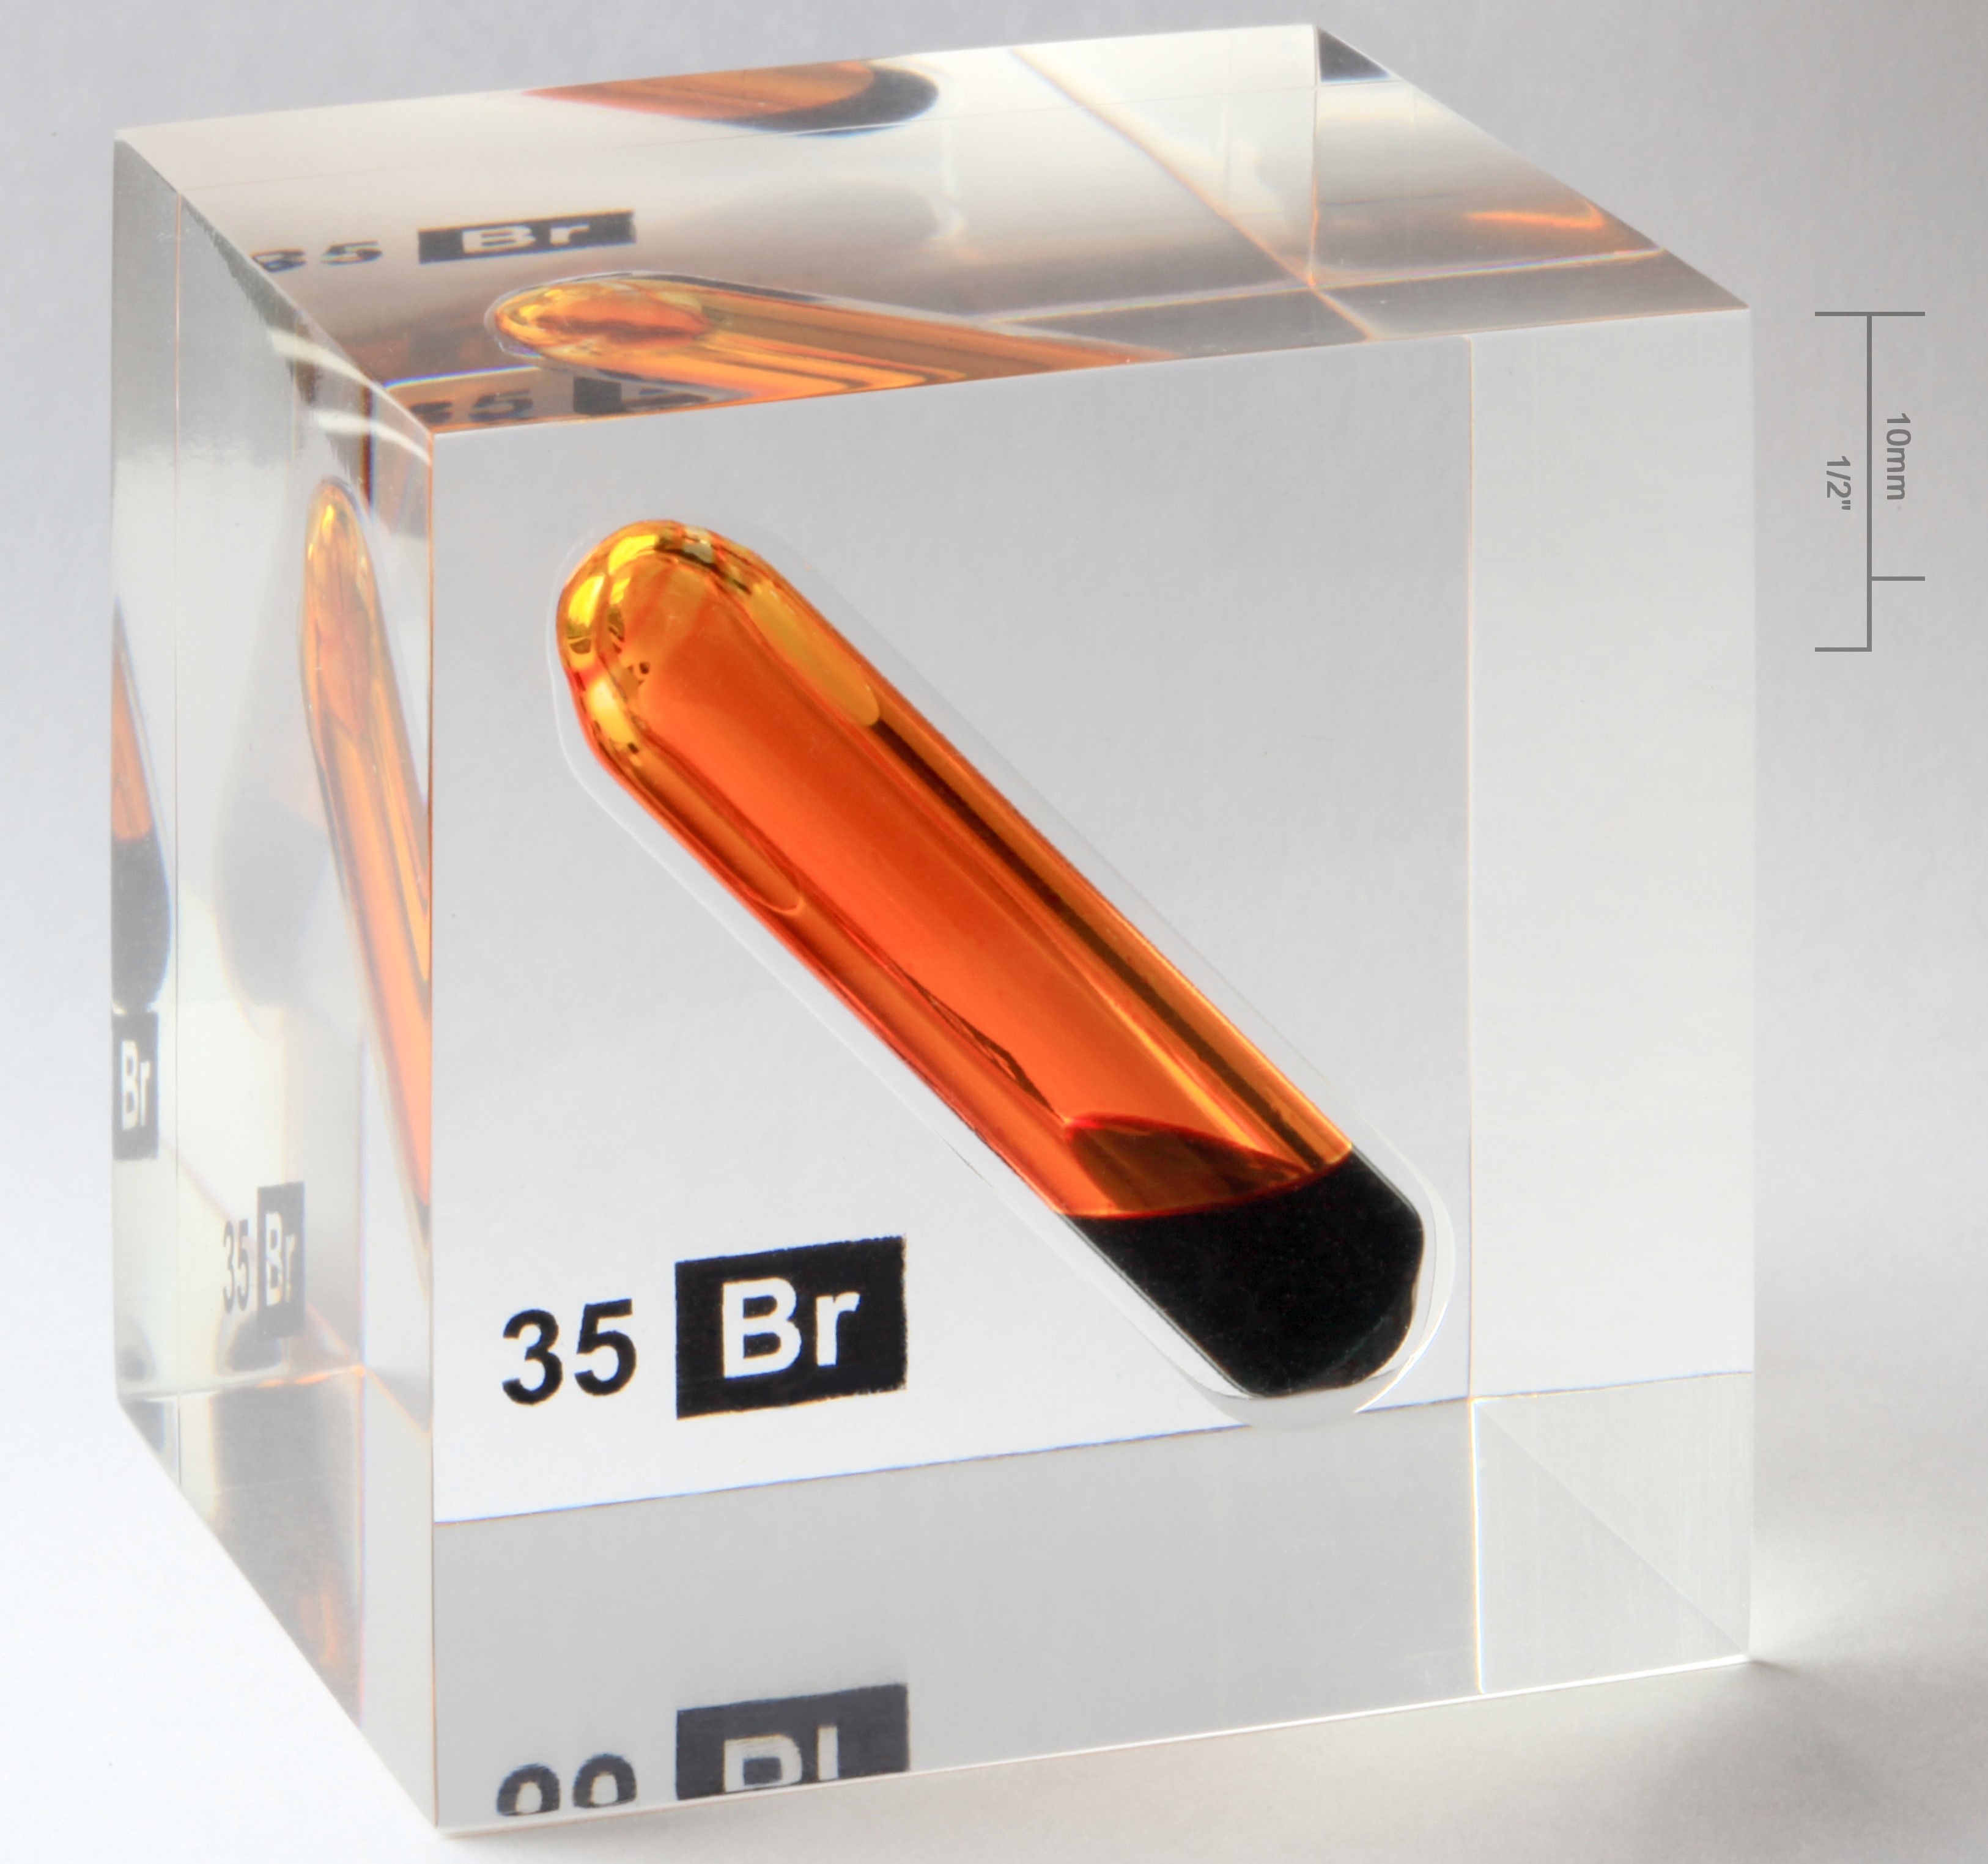 Brom là một nguyên tố hóa học thuộc nhóm Halogen